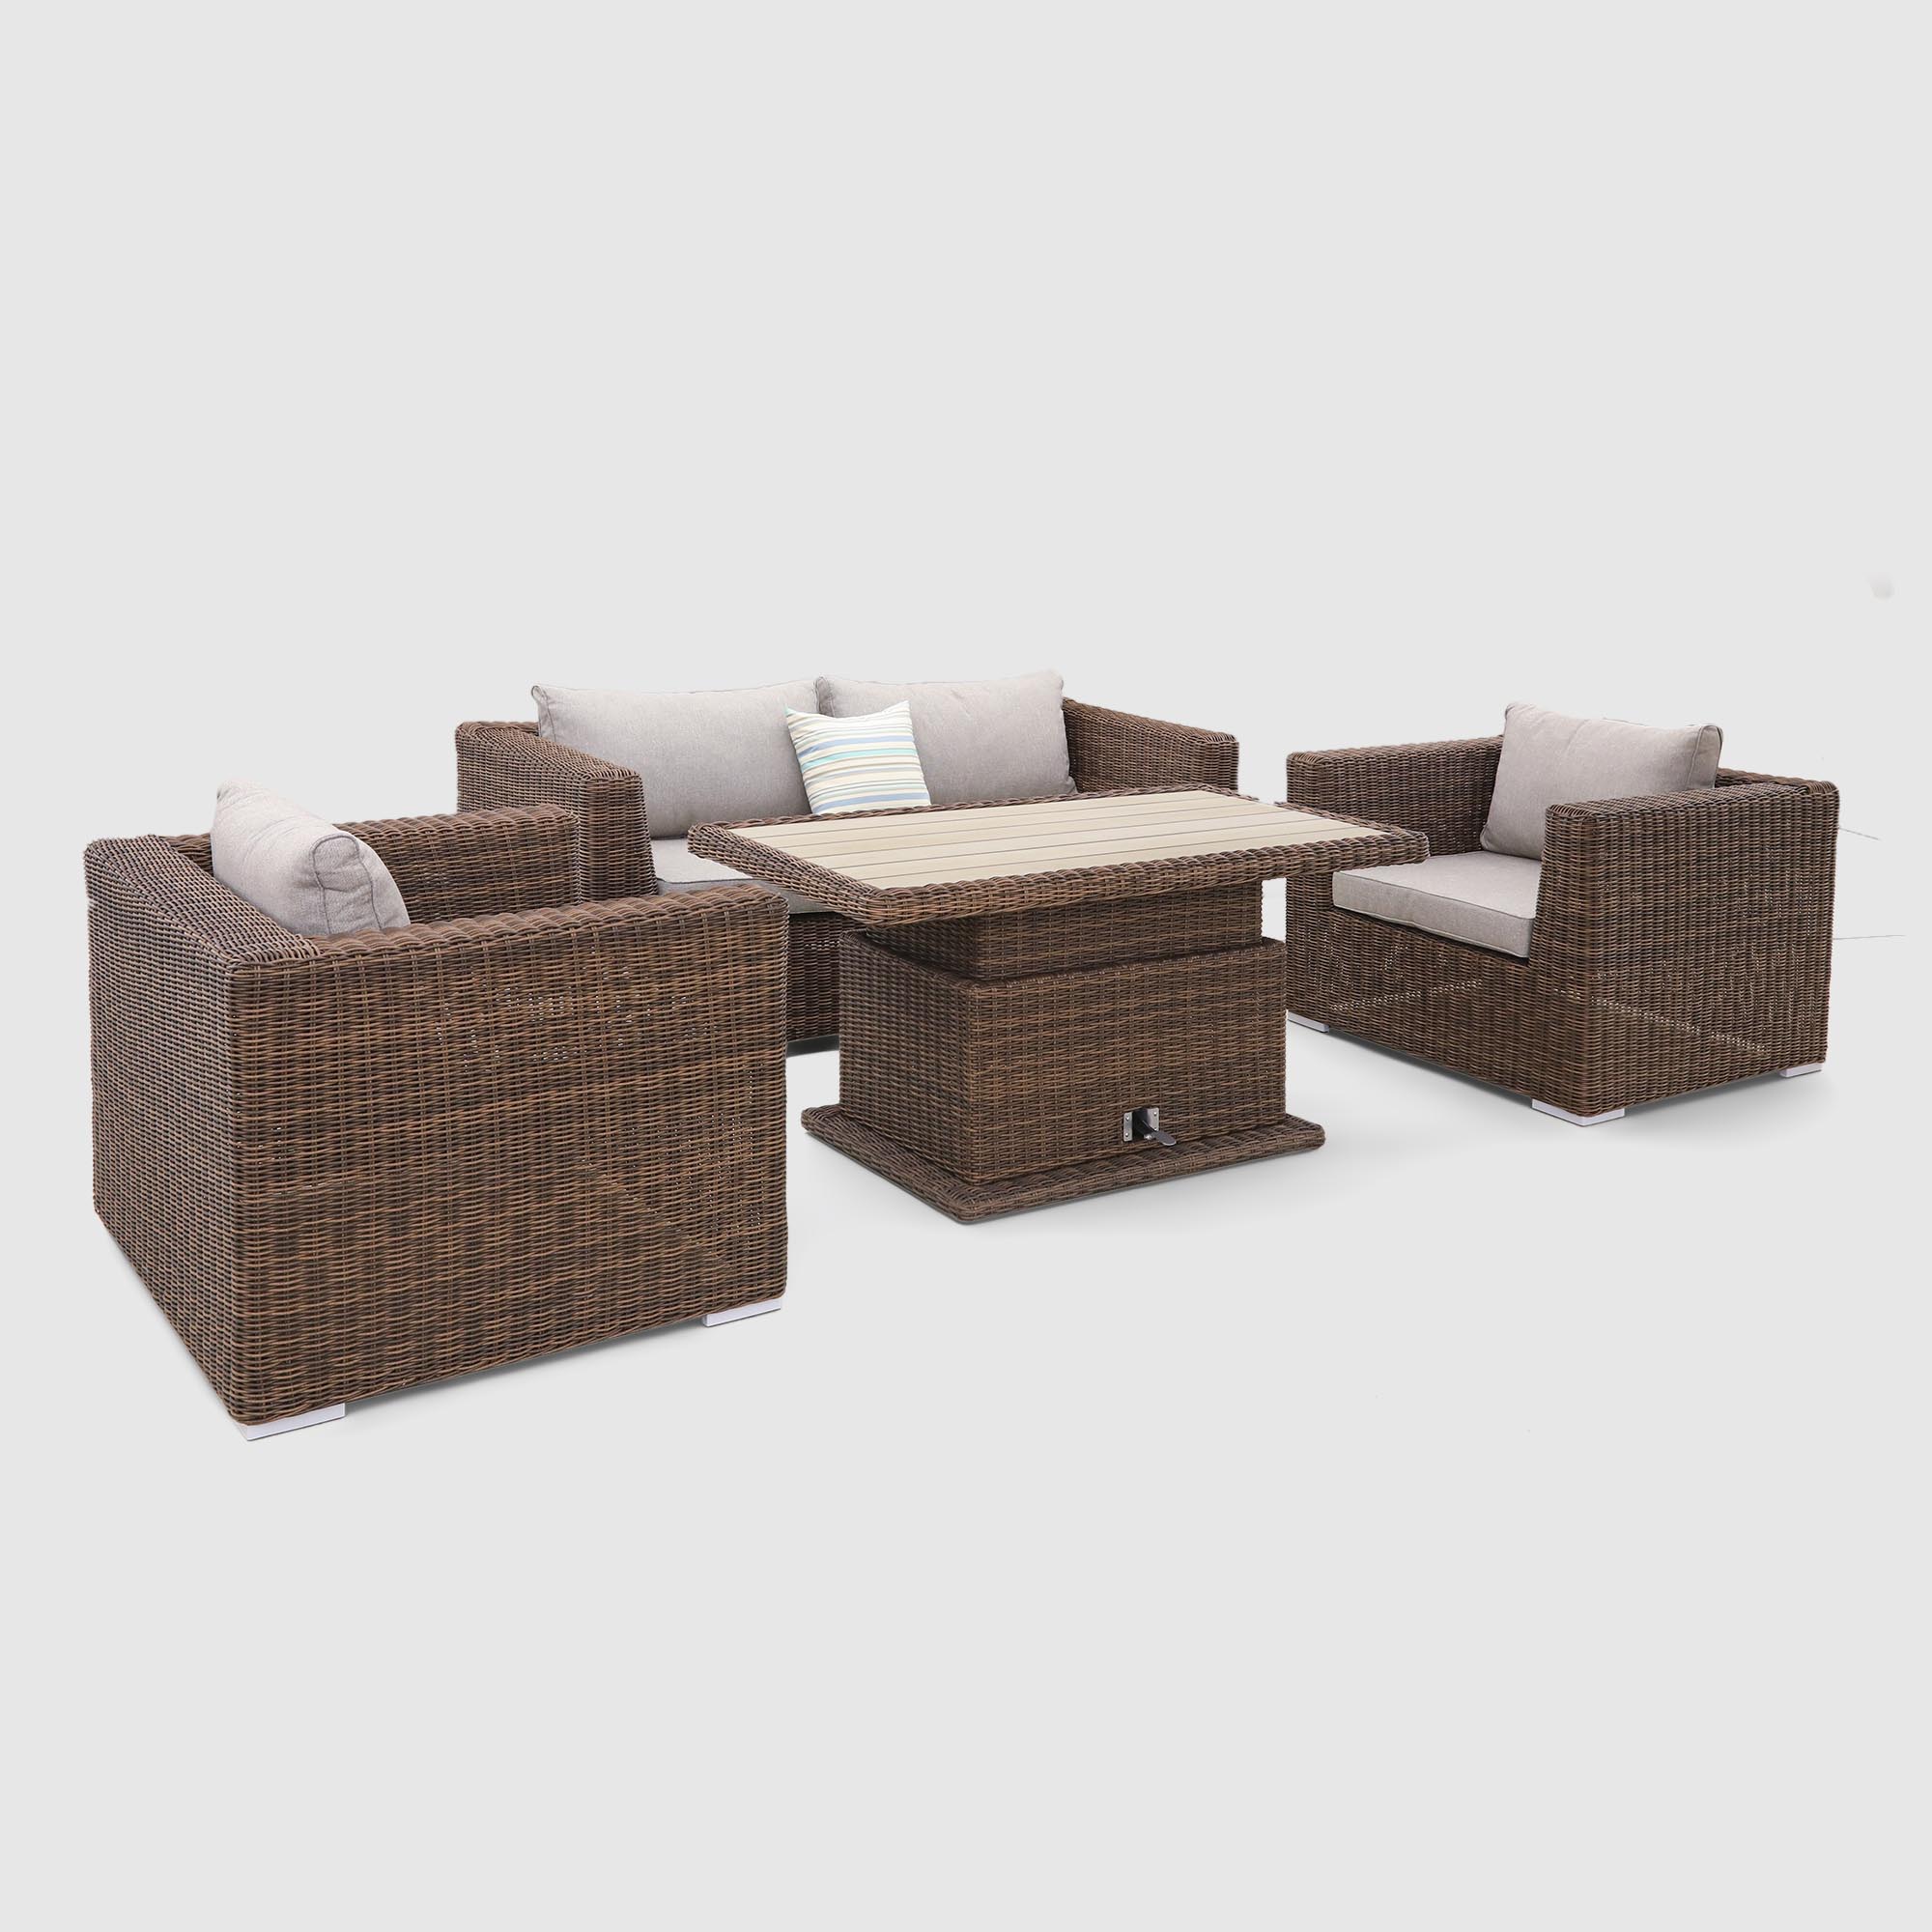 Комплект мебели Yuhang коричневый с серым 4 предмета, цвет бежевый, размер 205х98х80 - фото 1